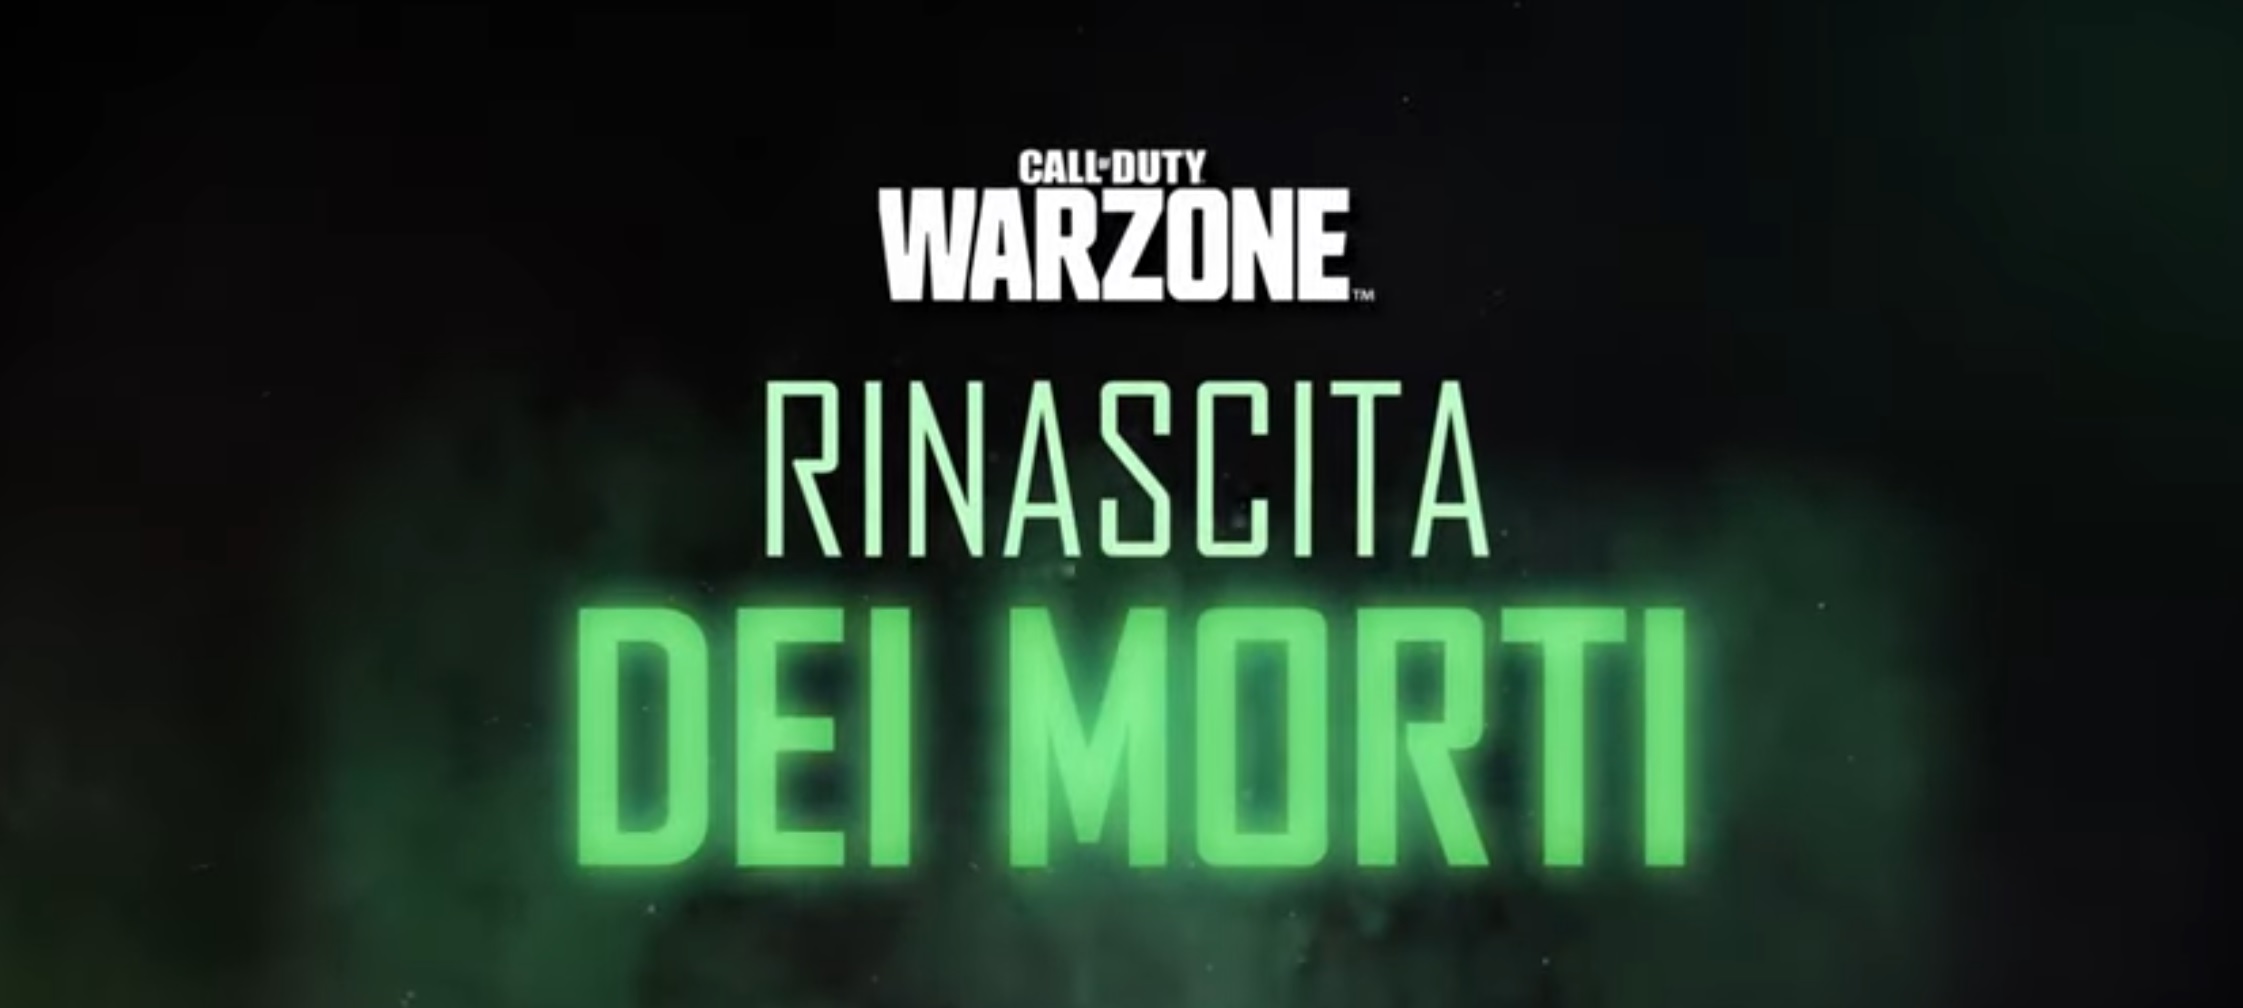 Trailer Rinascita dei morti | Call of Duty: Warzone